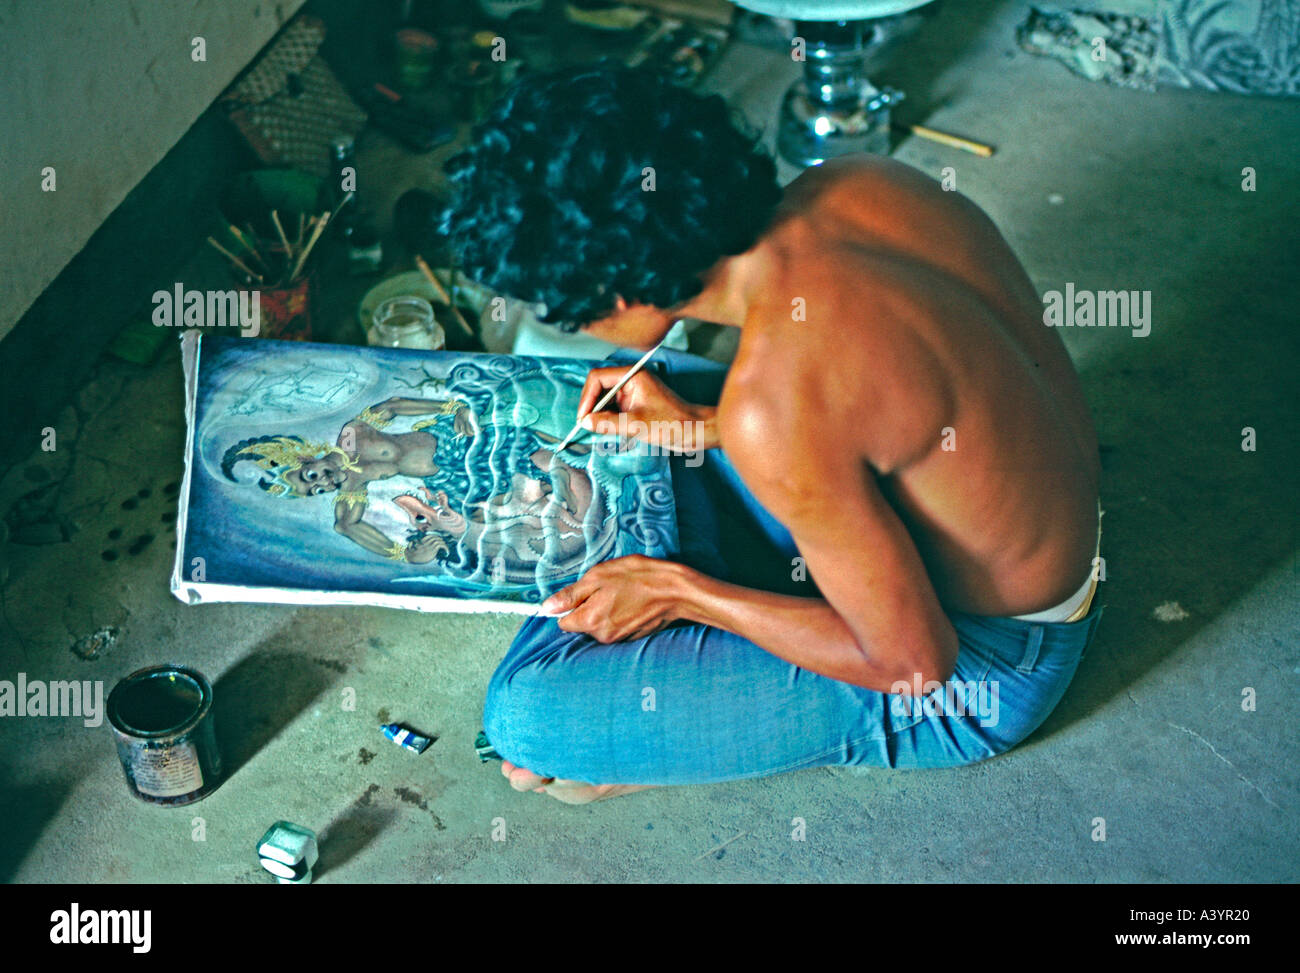 Un artiste balinais dans l'enclave d'œuvres d'artistes d'Ubud sur une peinture dans un style traditionnel Balinais Banque D'Images